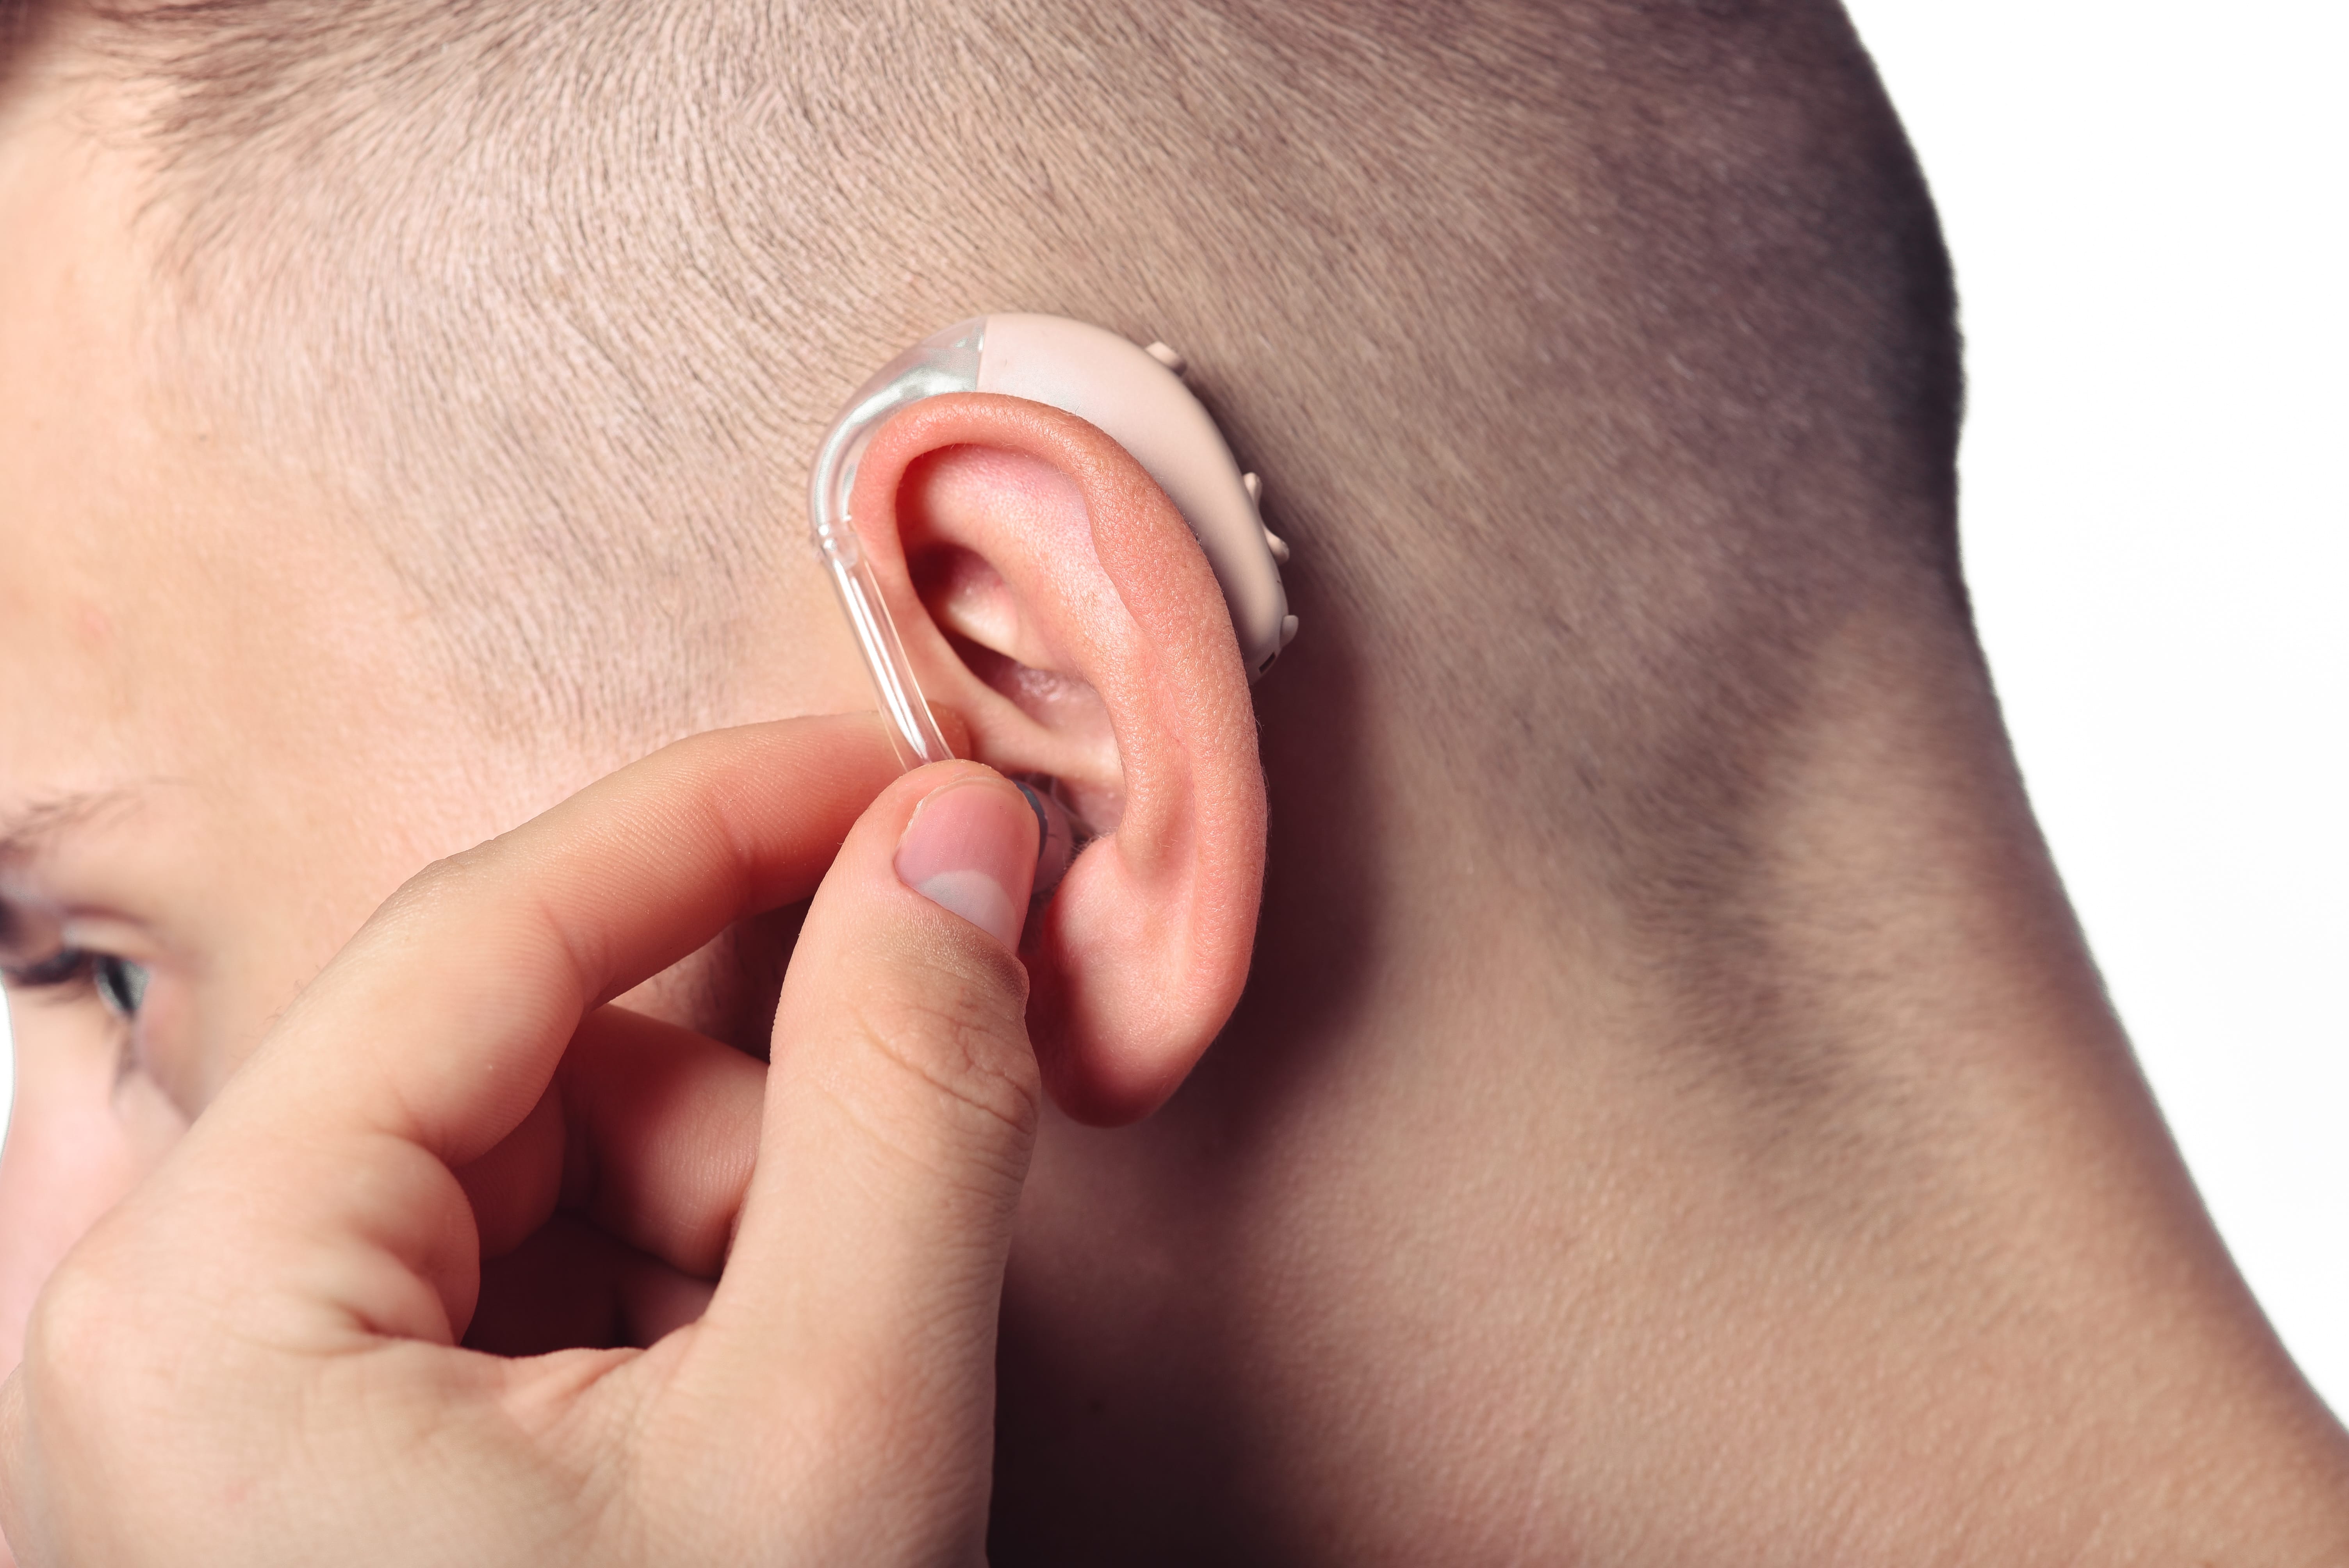 Hearing video. Заушные слуховые аппараты (BTE). Hearing Aid слуховой аппарат. Наушники для слабослышащих людей.